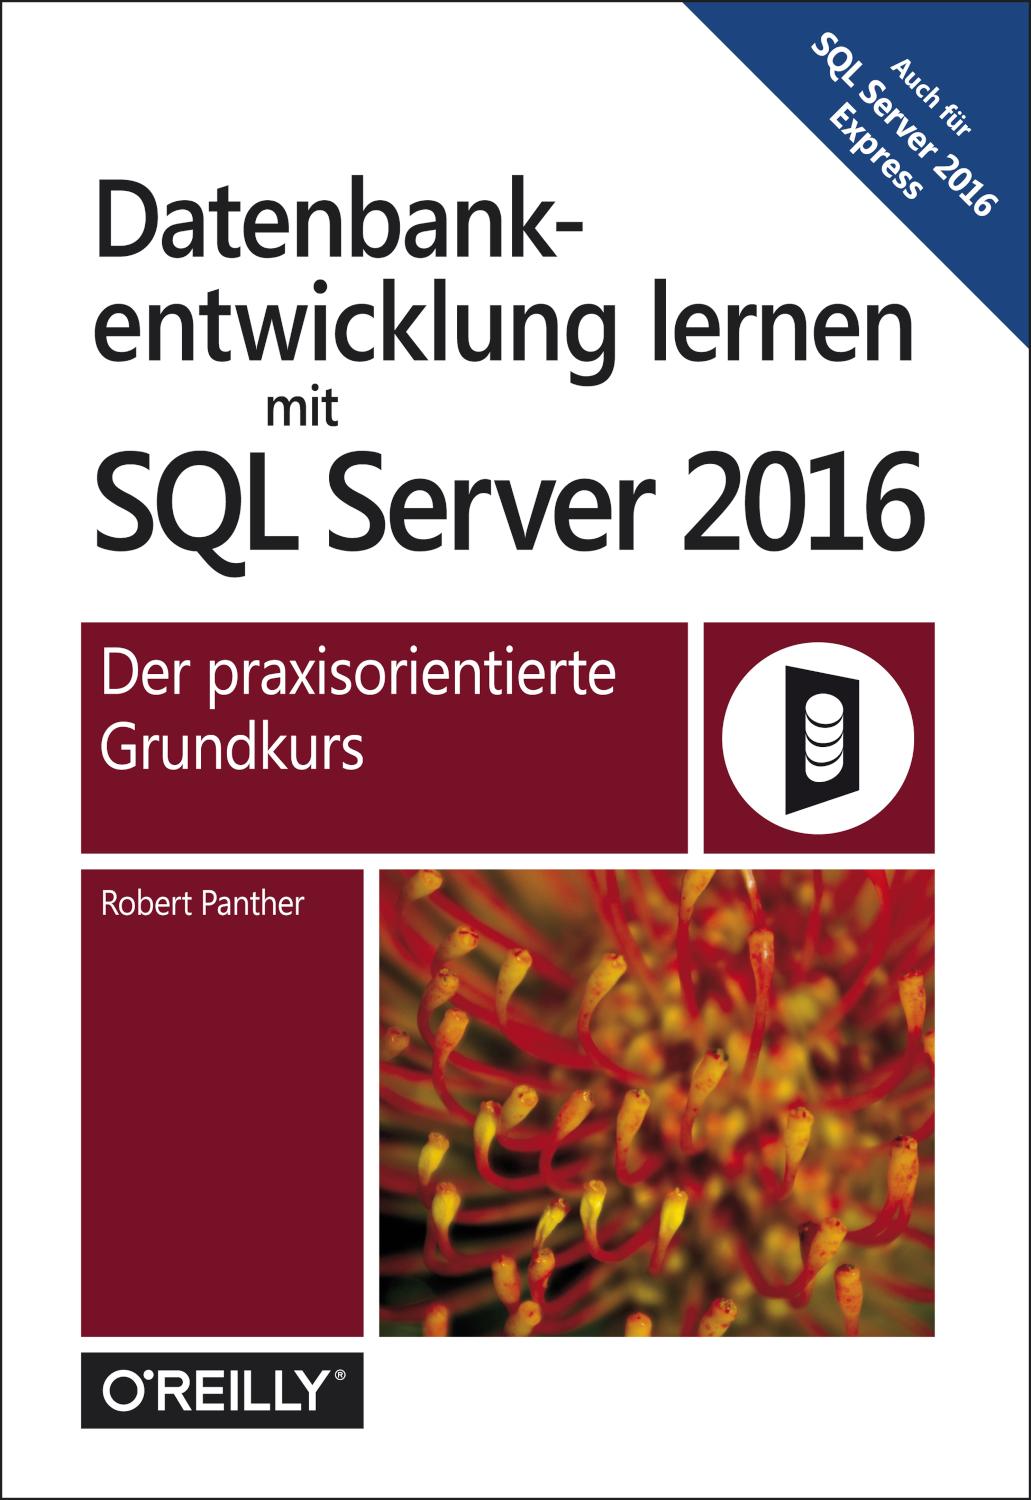 Datenbankentwicklung lernen mit SQL Server 2016 Der praxisorientierte Grundkurs